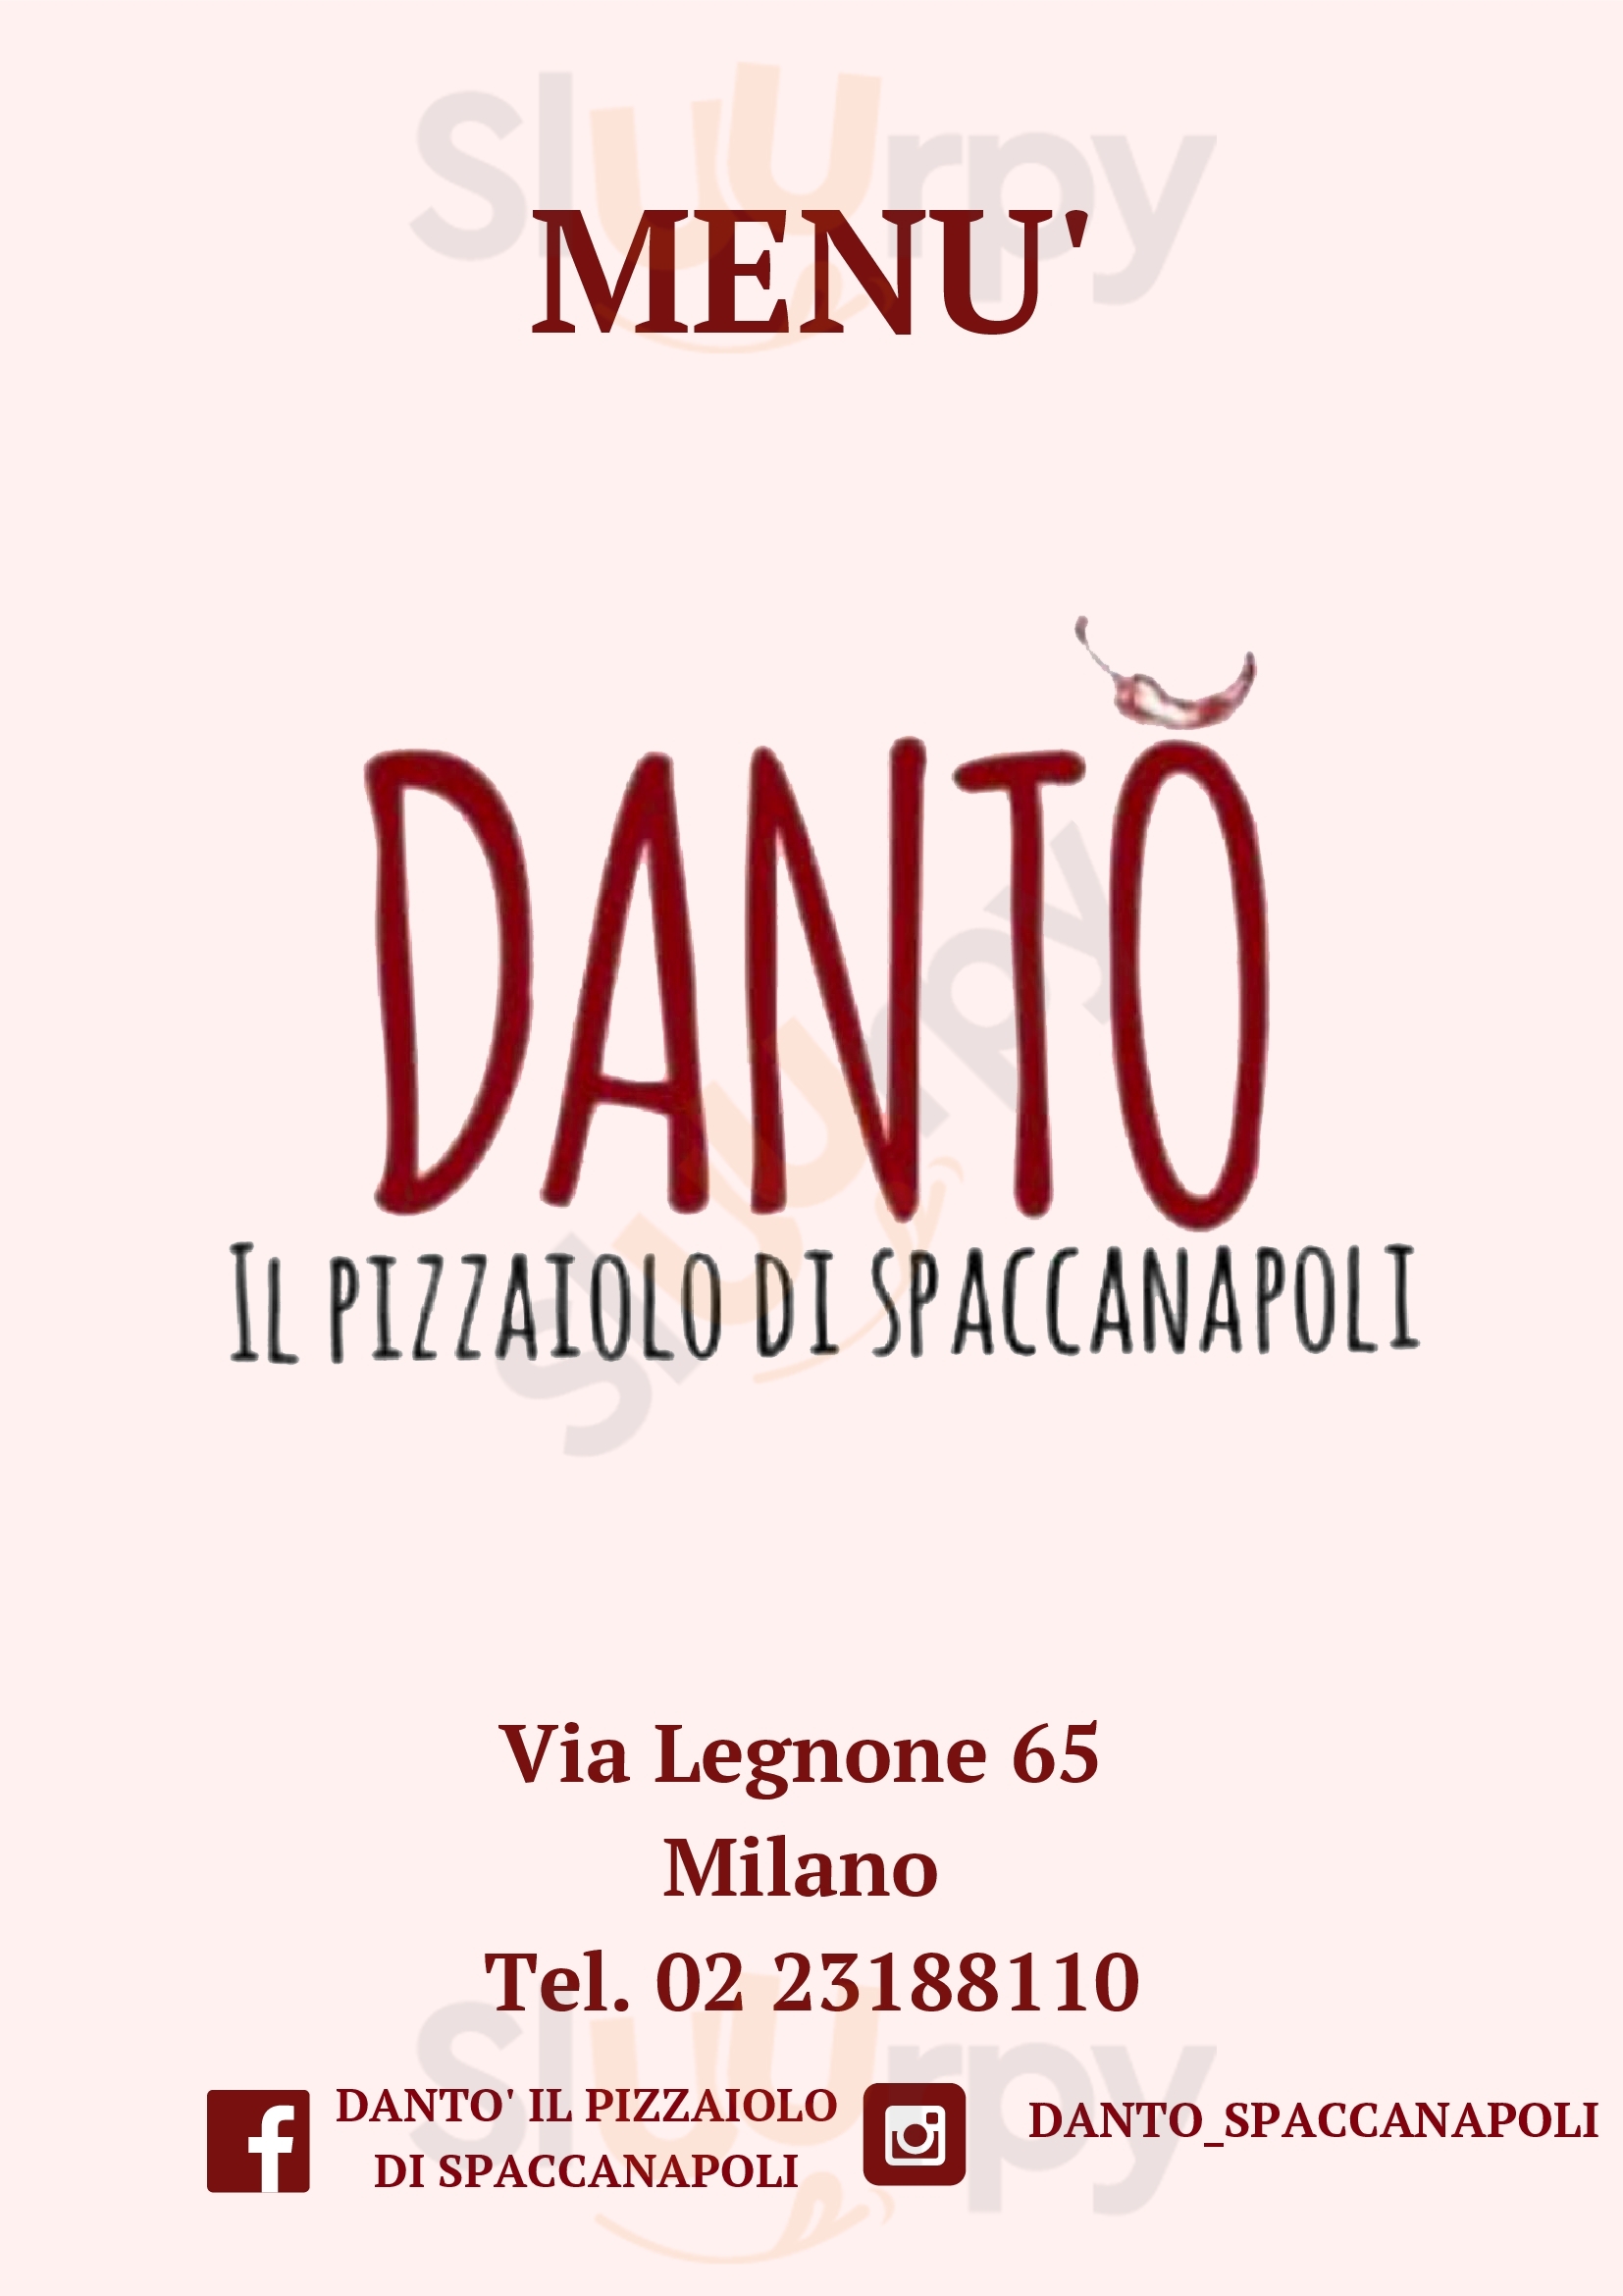 Dantó il pizzaiolo di spaccanapoli Milano menù 1 pagina